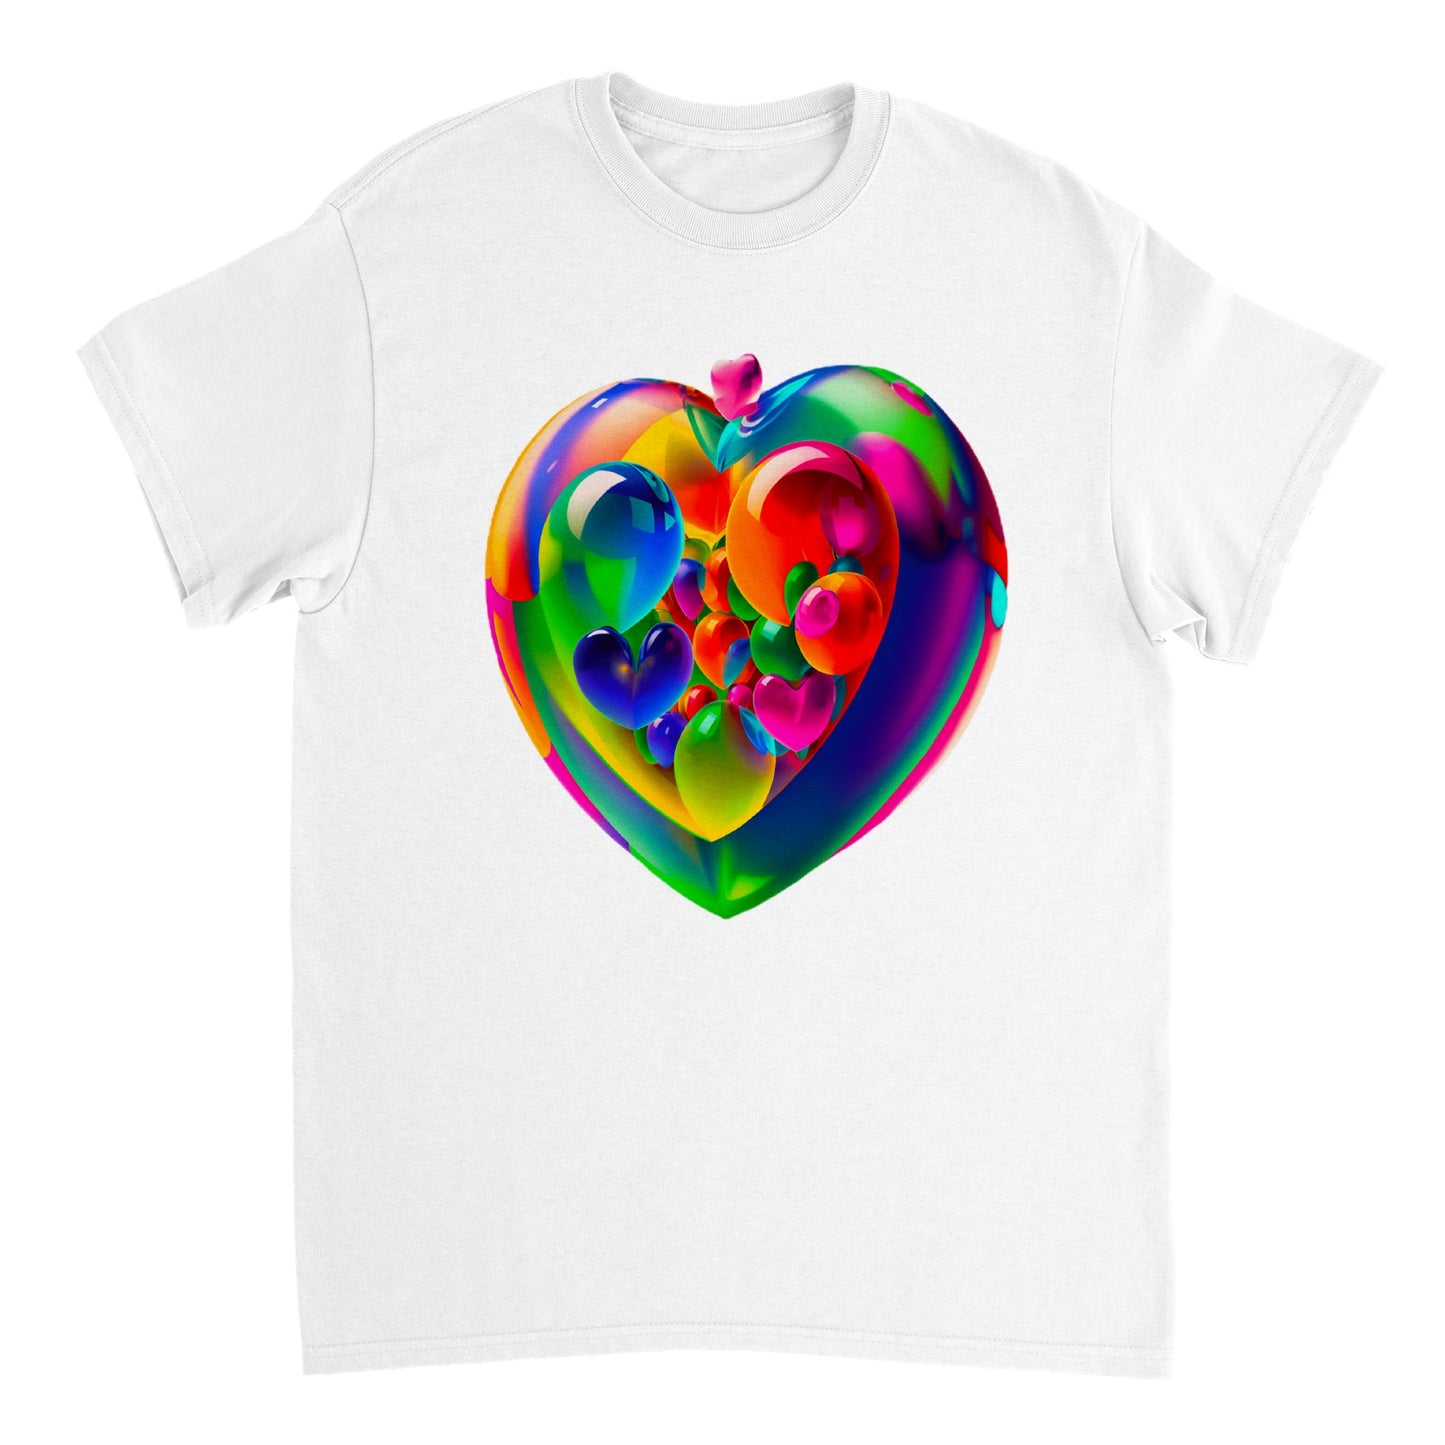 Love Heart - Heavyweight Unisex Crewneck T-shirt 47